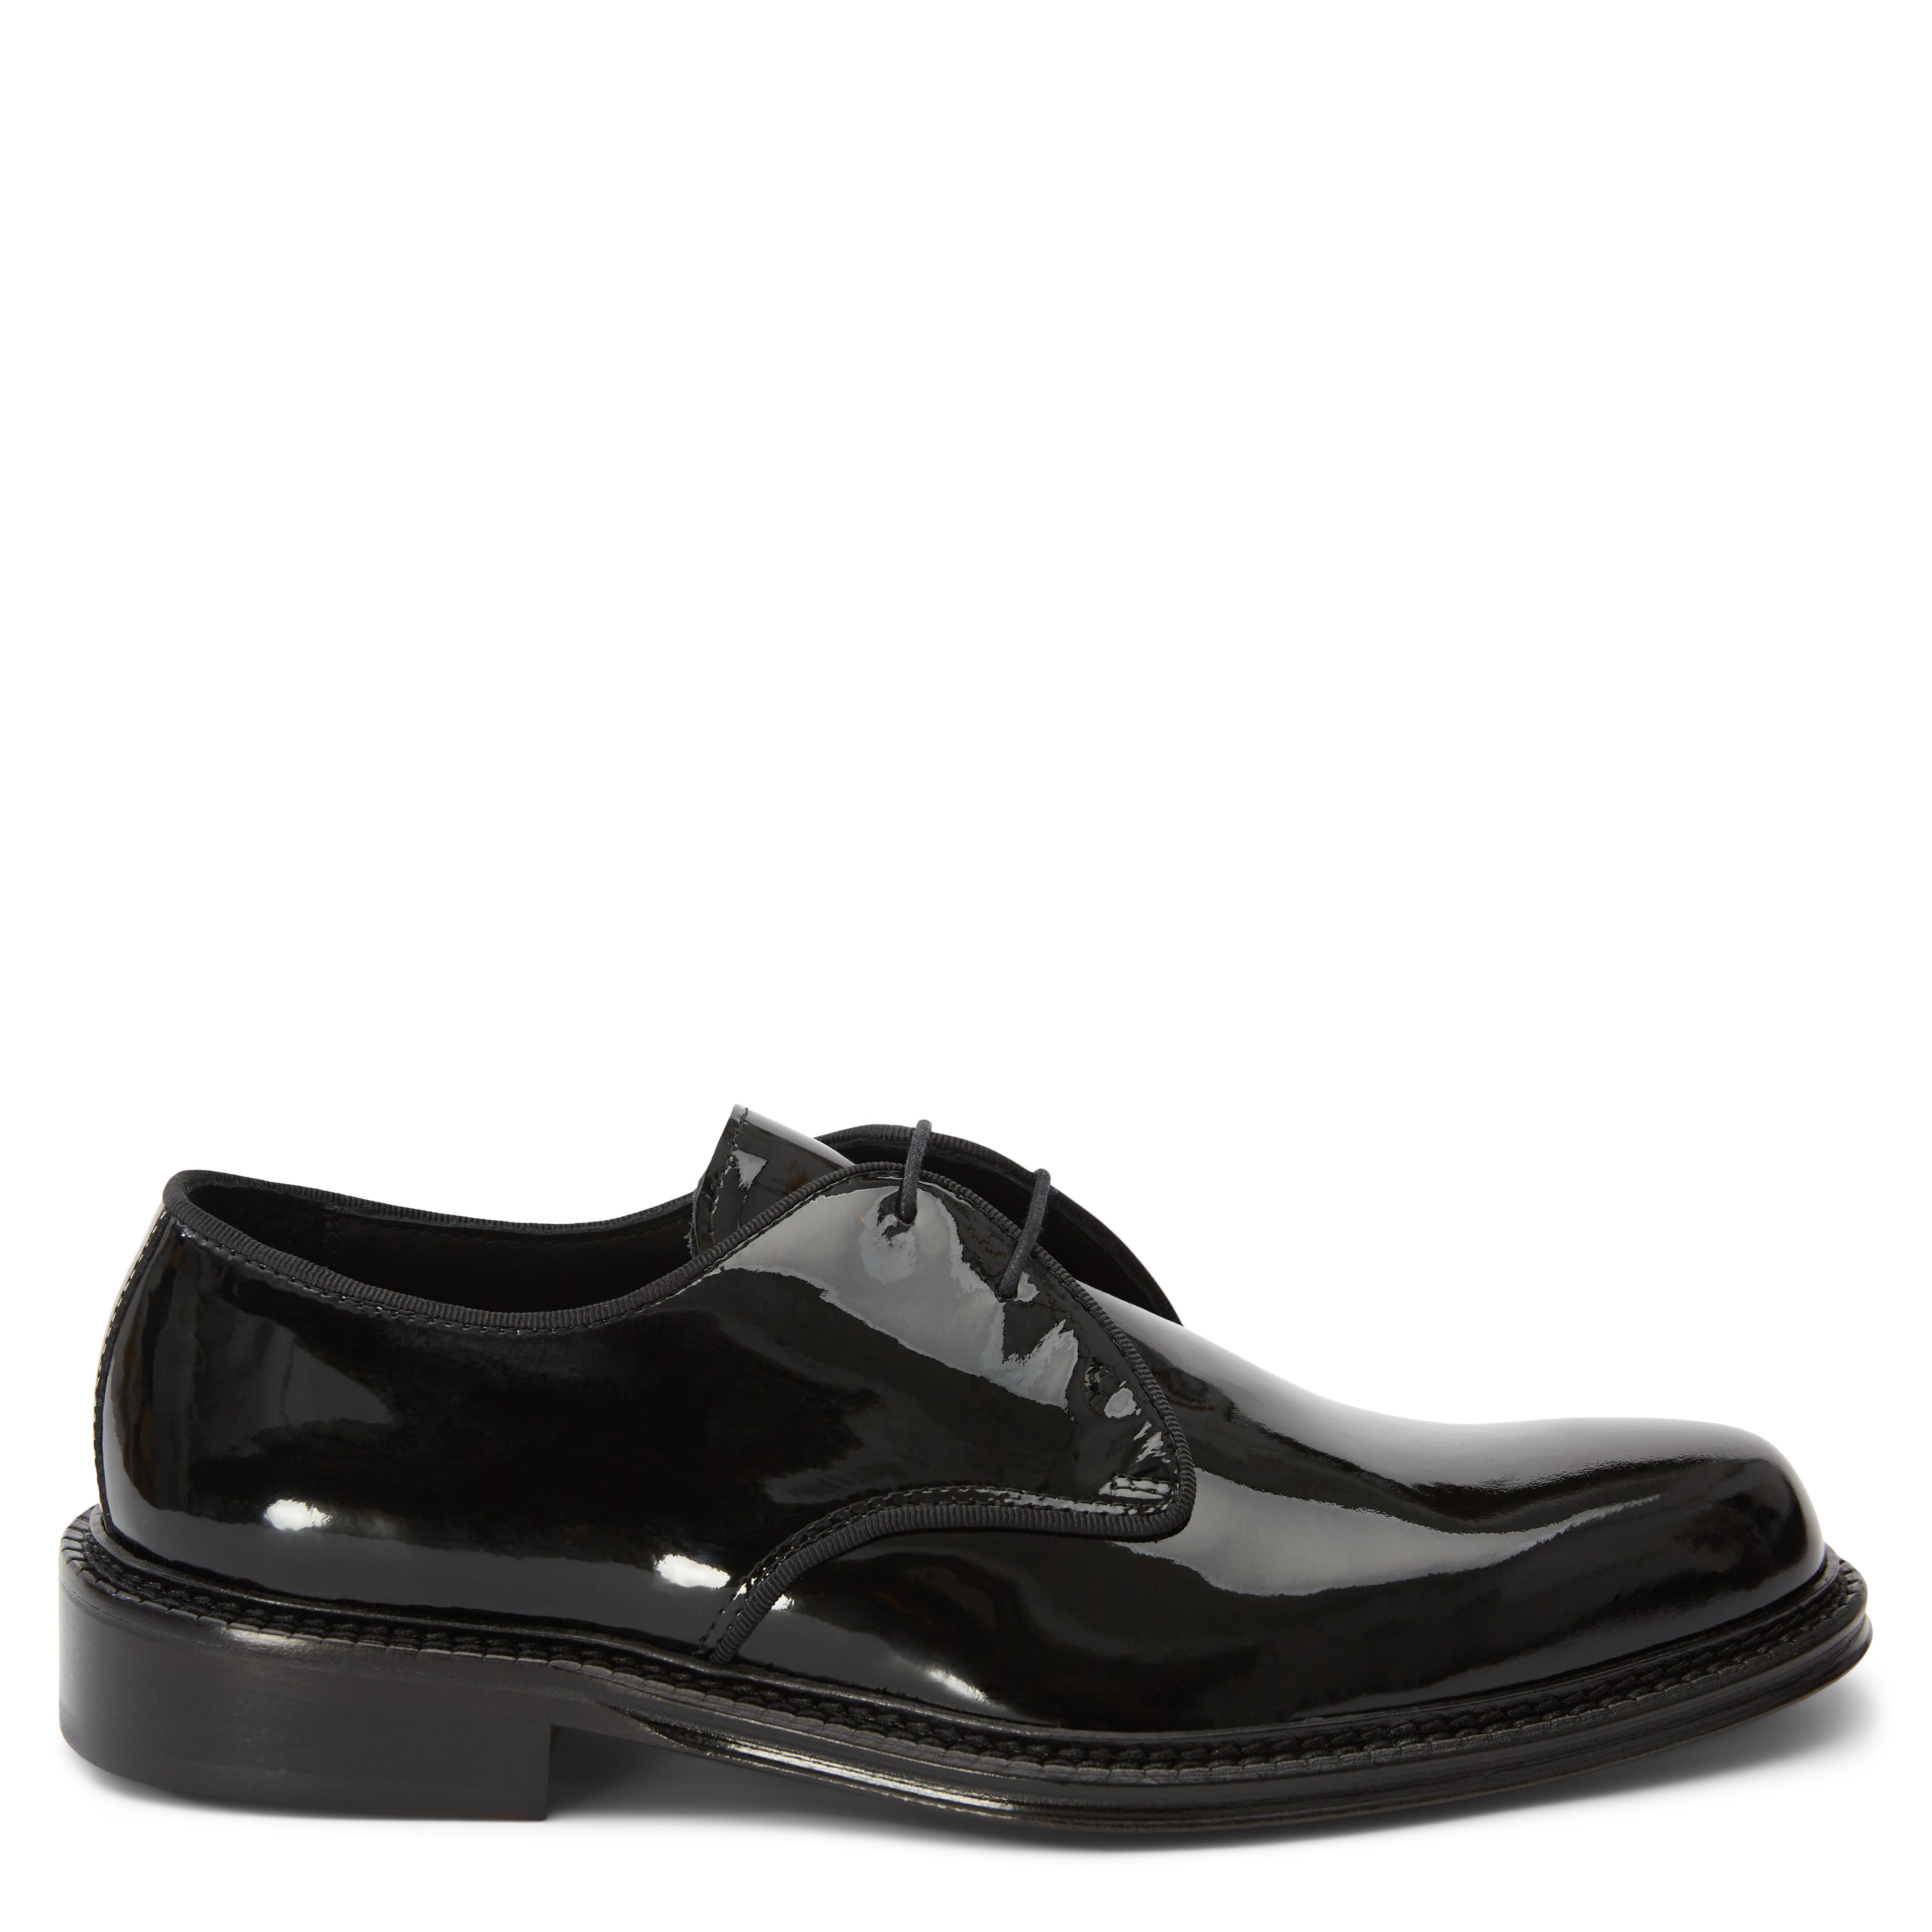 Ahler Shoes 98200 Black